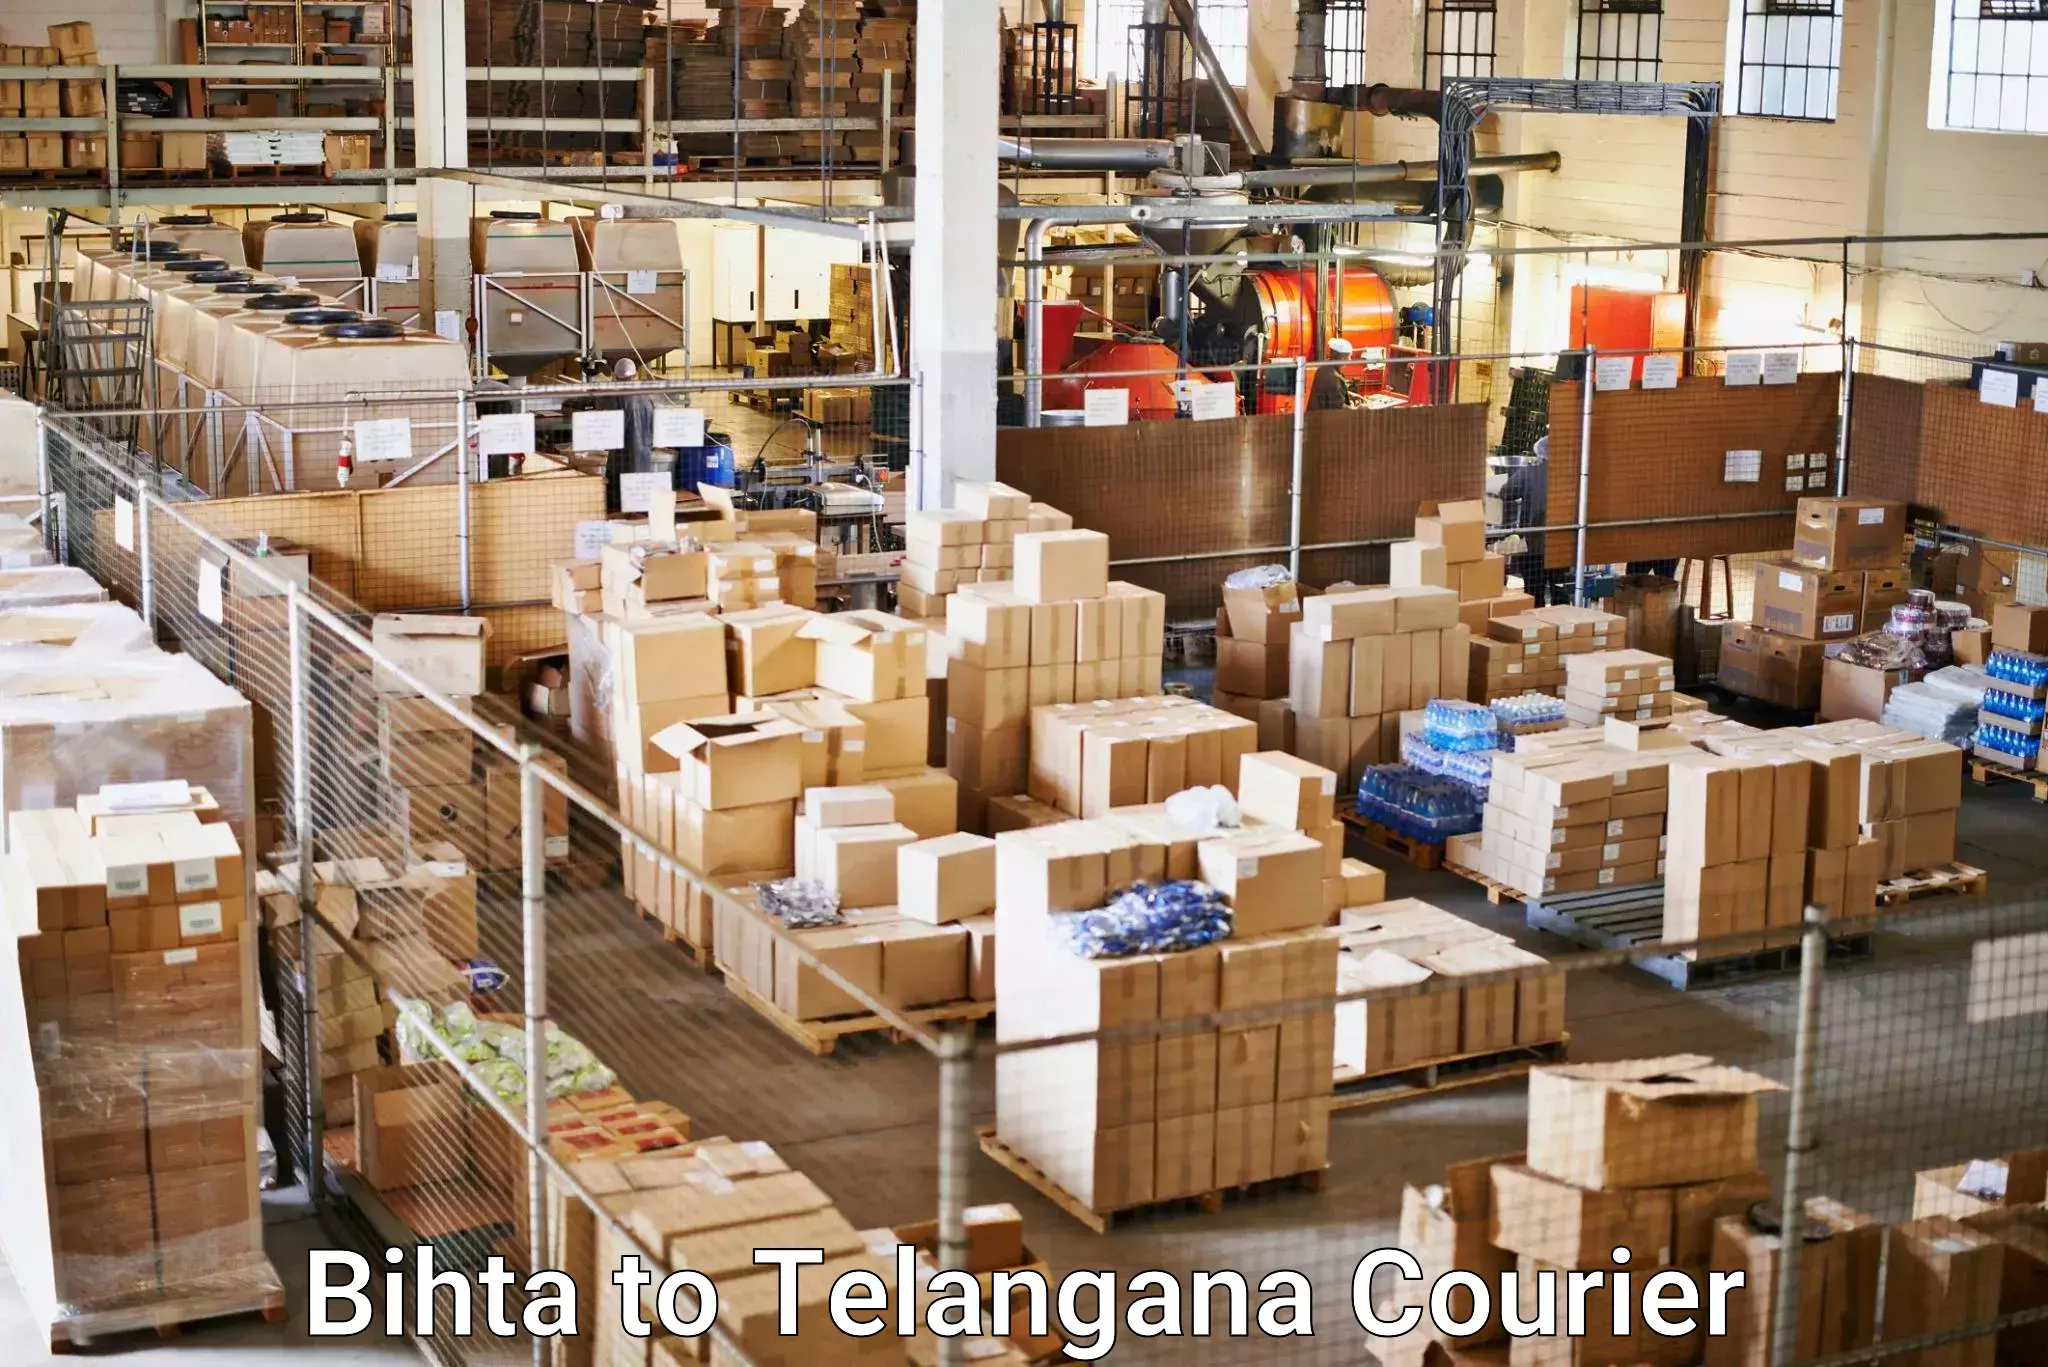 Shipping and handling Bihta to Gadwal